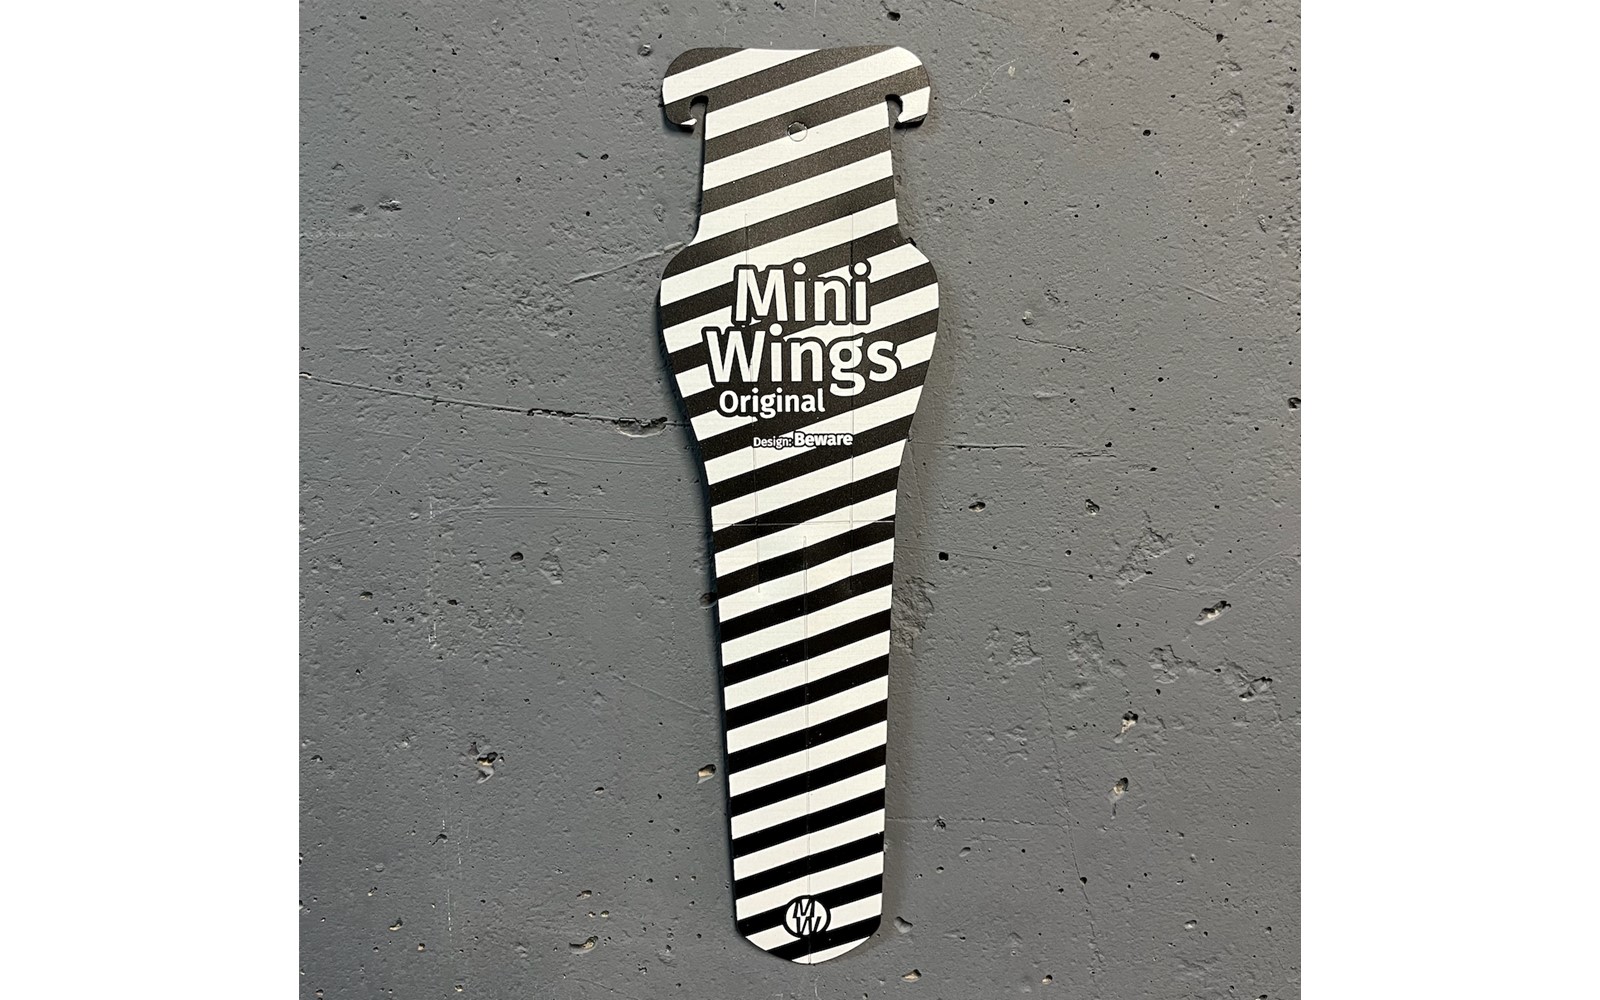 Крыло заднее Mini Wings Original Beware за 12,99 руб. в магазине городских велосипедов City Bikes в Минске.